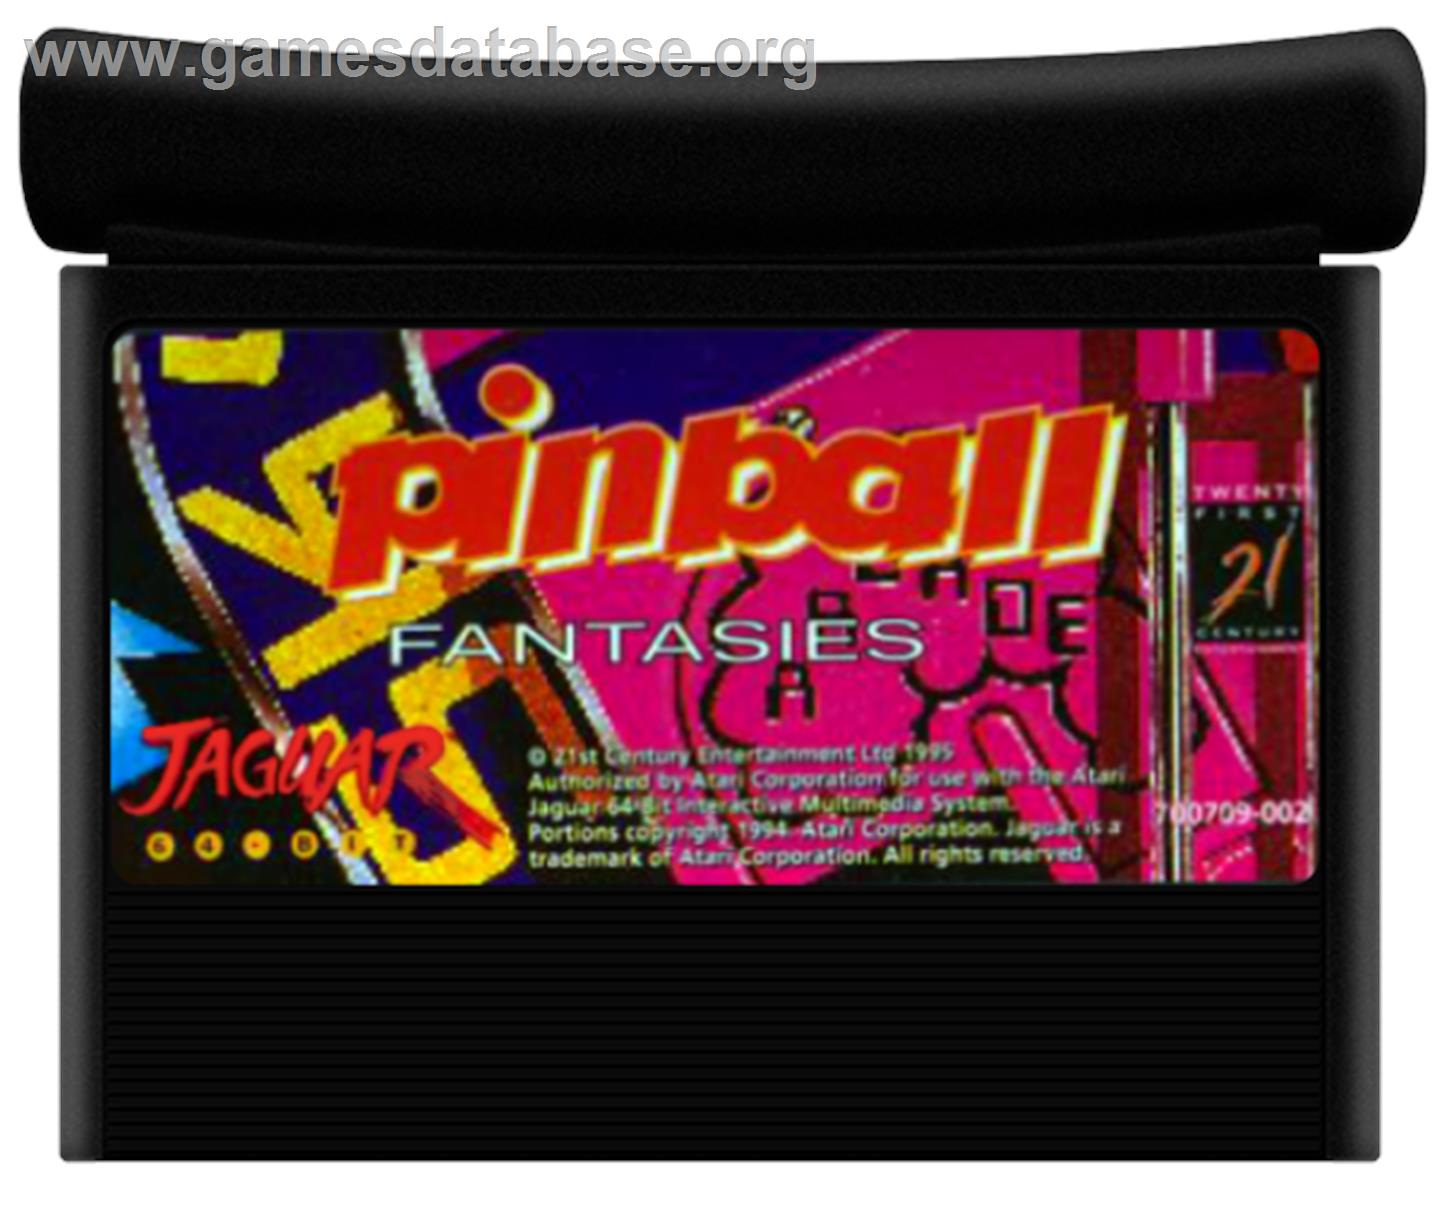 Pinball Fantasies - Atari Jaguar - Artwork - Cartridge